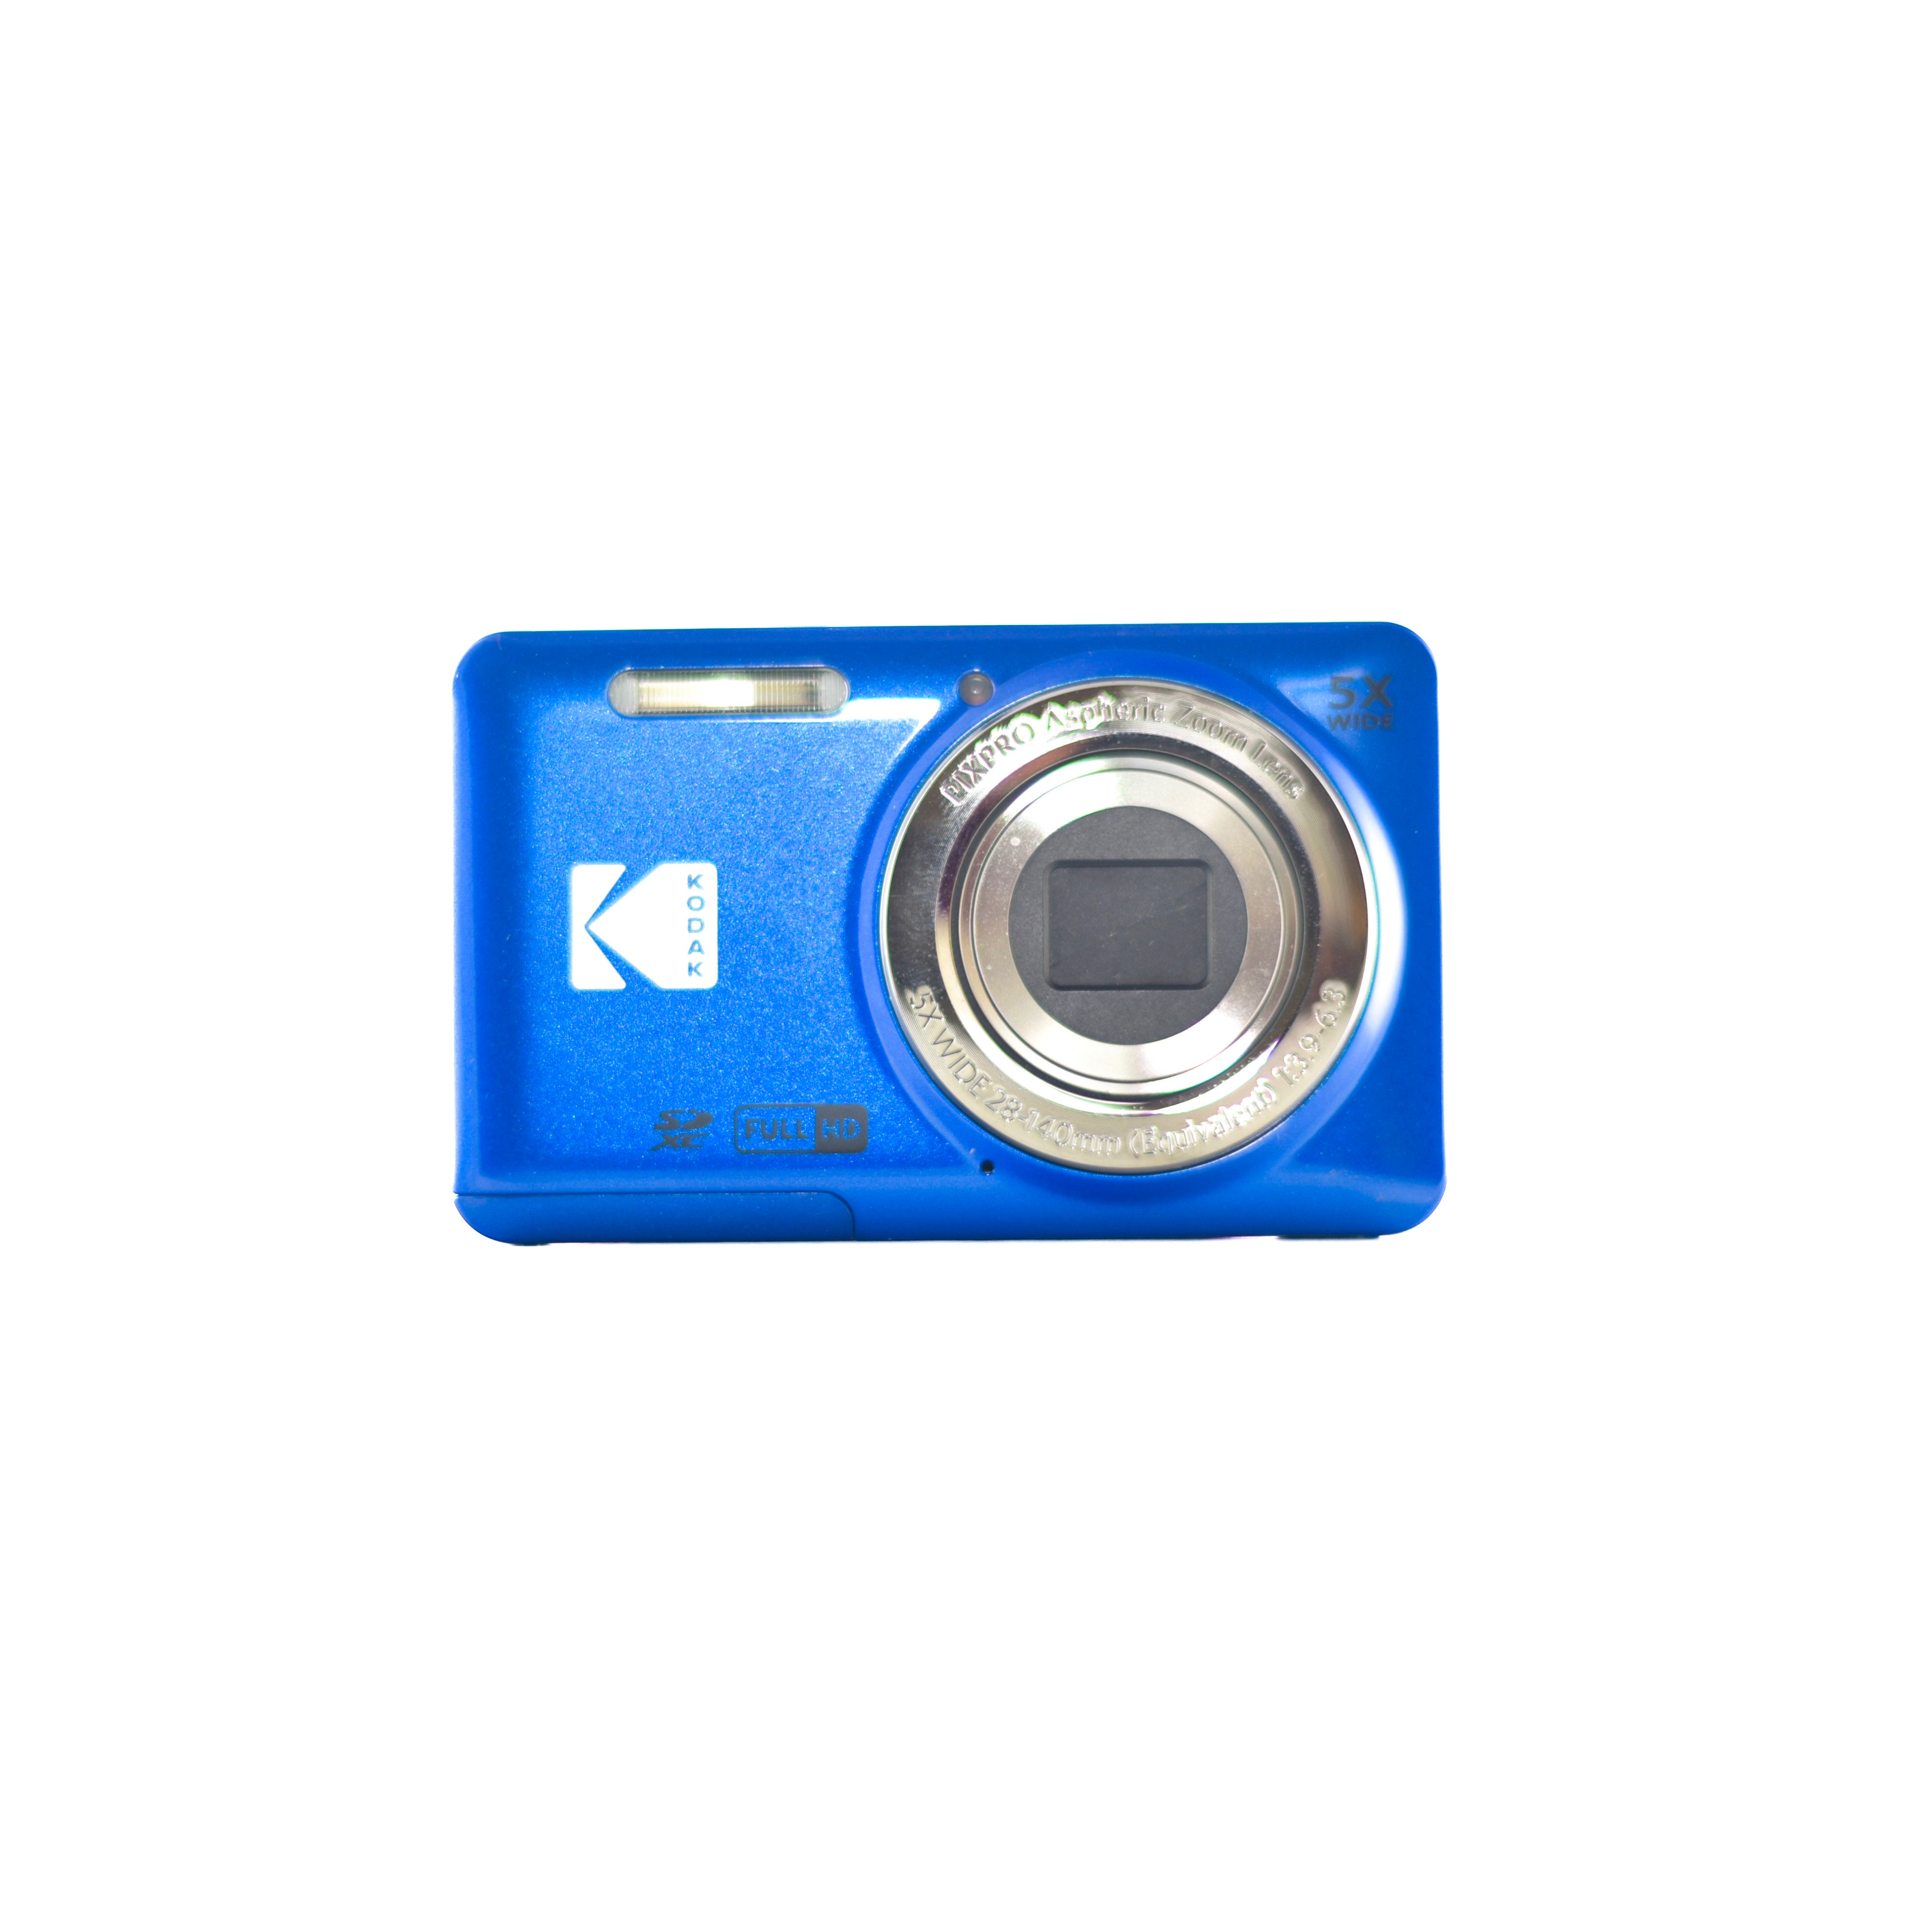  Kodak PIXPRO FZ55 Digital Camera (Red) + 32GB Memory